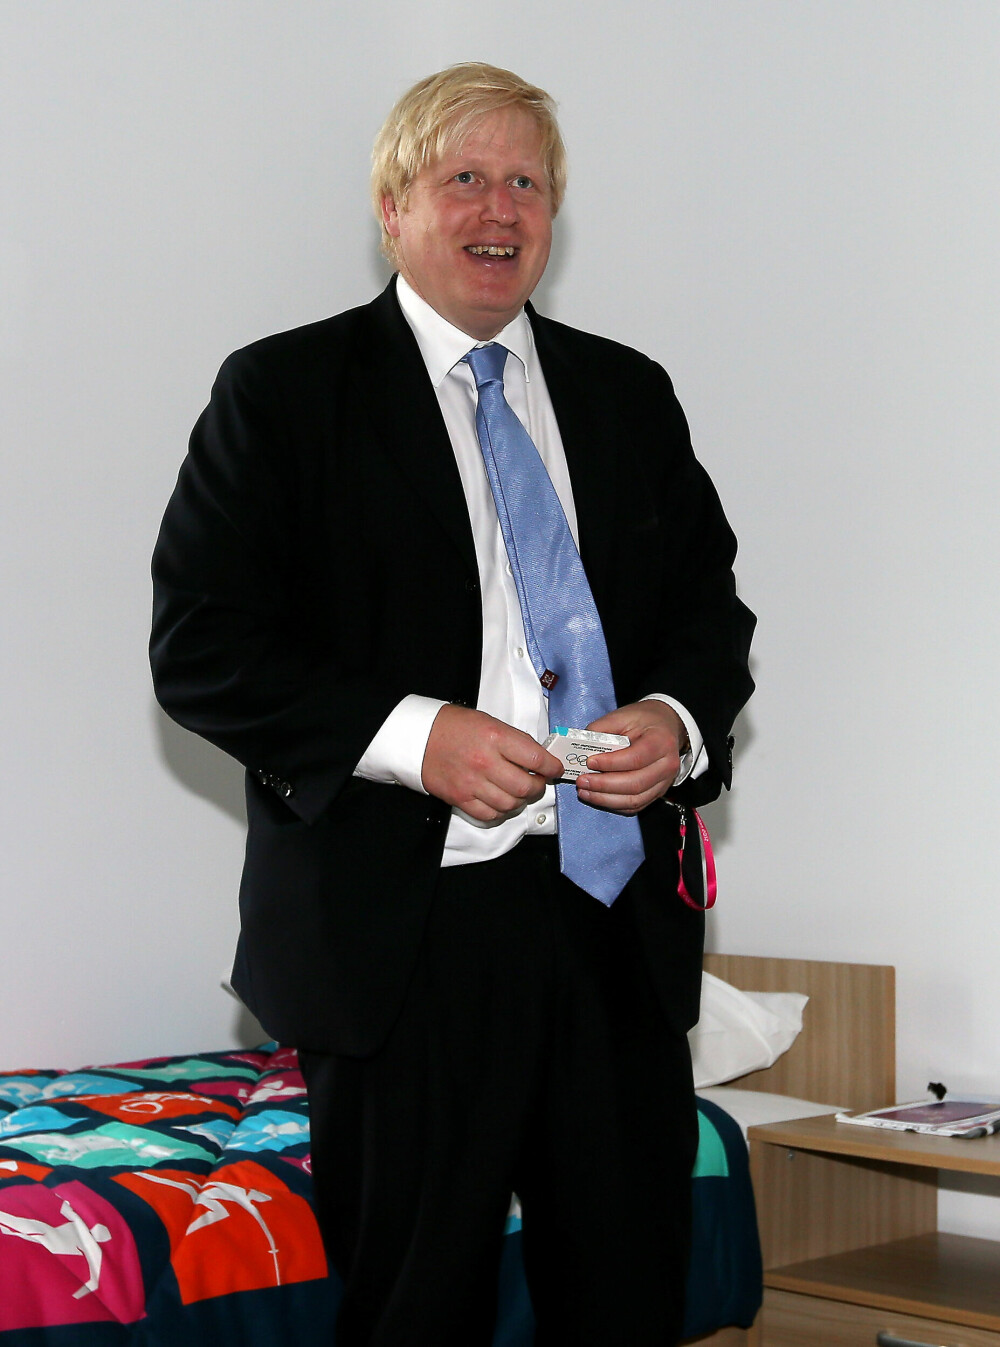 <b>SUVENIR-GUMMI:</b> Daværende ordfører i London, Boris John­son, viser frem standard­inn­redningen på deltager­rommene før OL i London i 2012; en pakke med kondomer, smykket med lekenes offisielle logo.